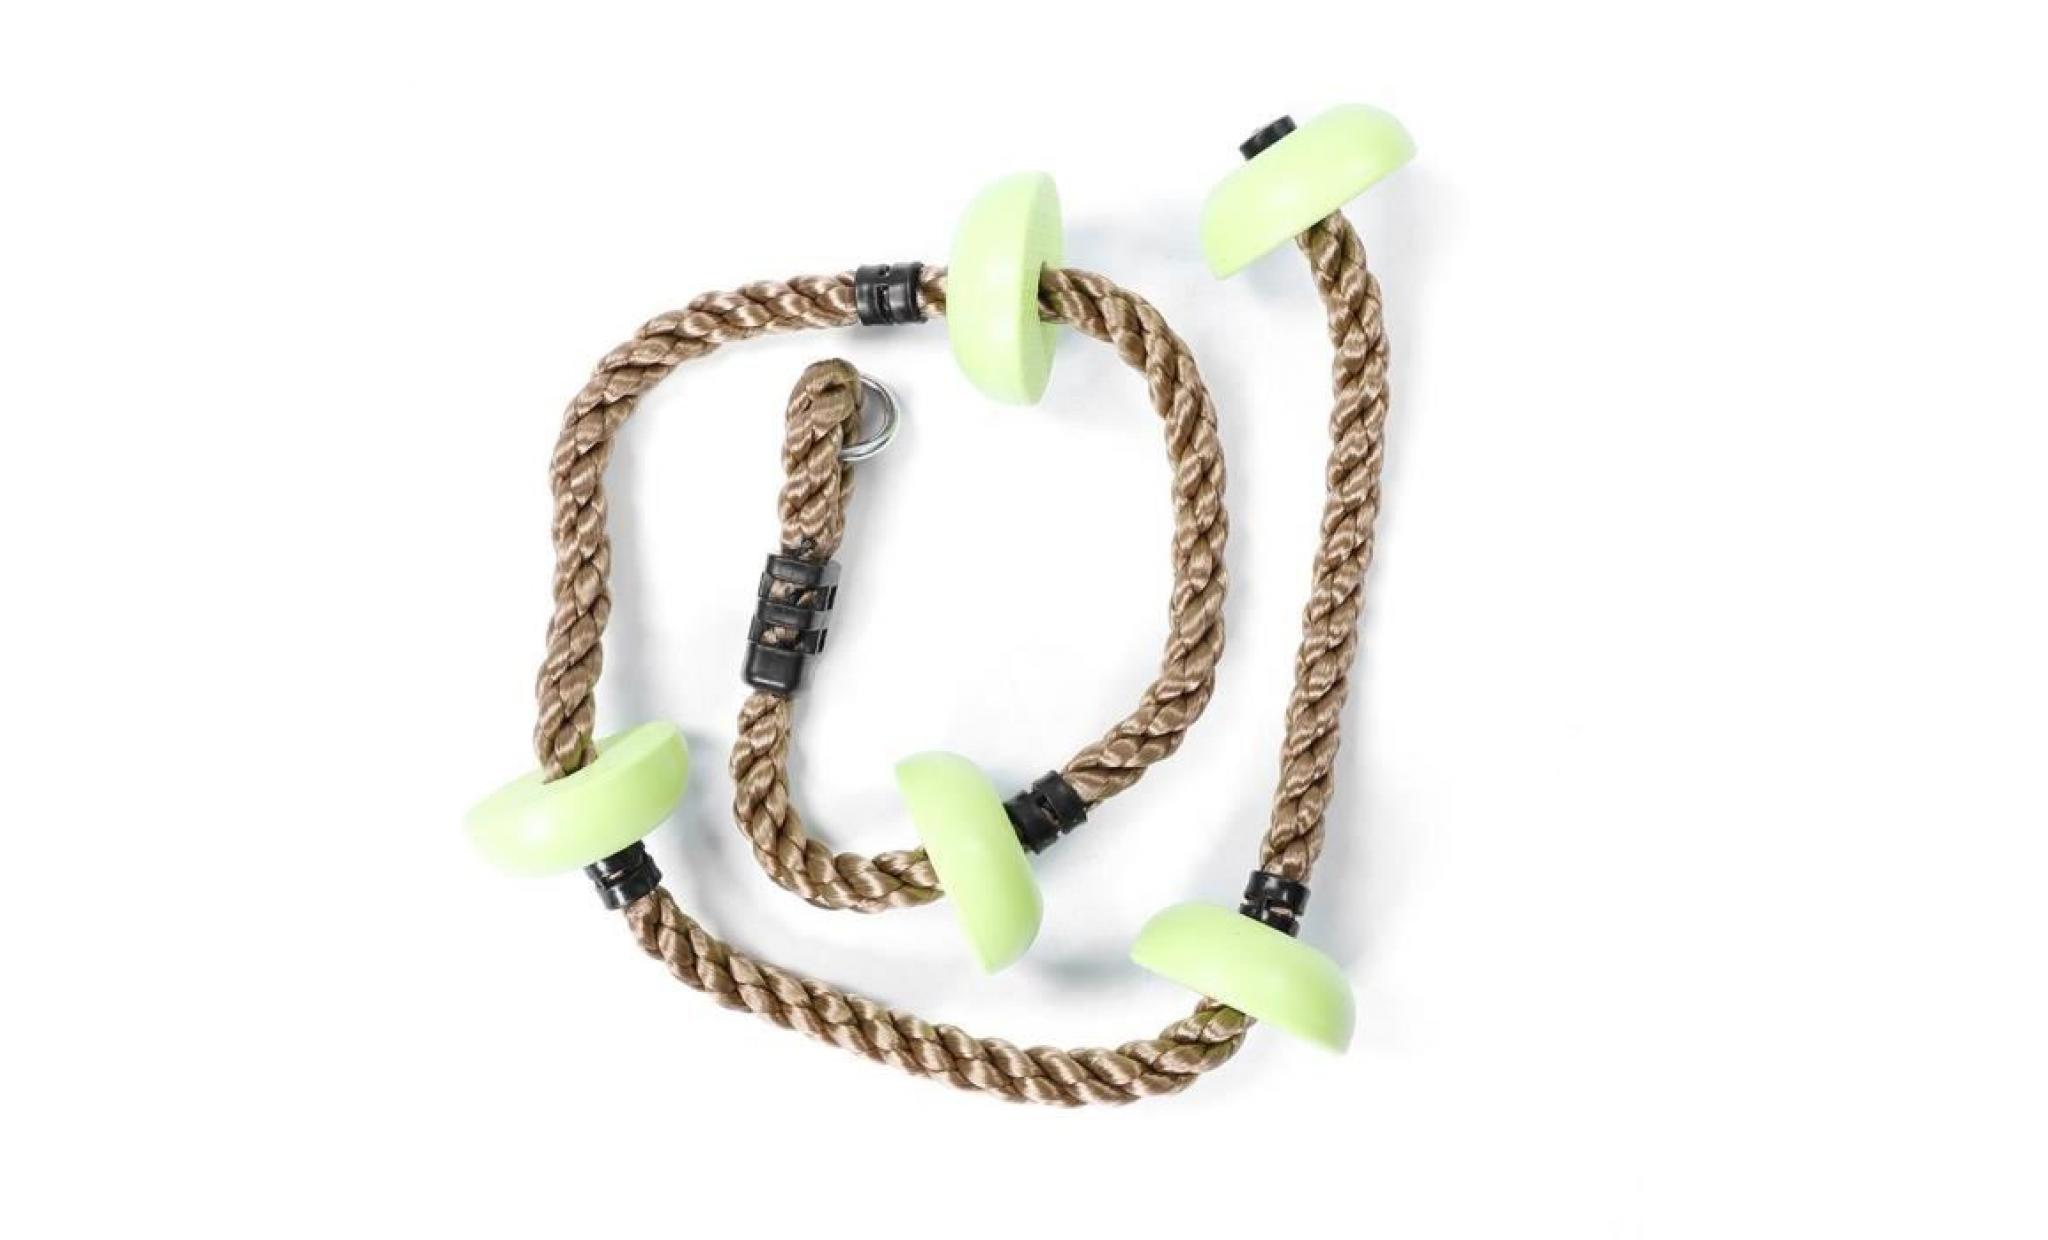 corde d'escalade à disque pour enfants jouet d'équipement de terrain de jeu (vert foncé)   rac pas cher